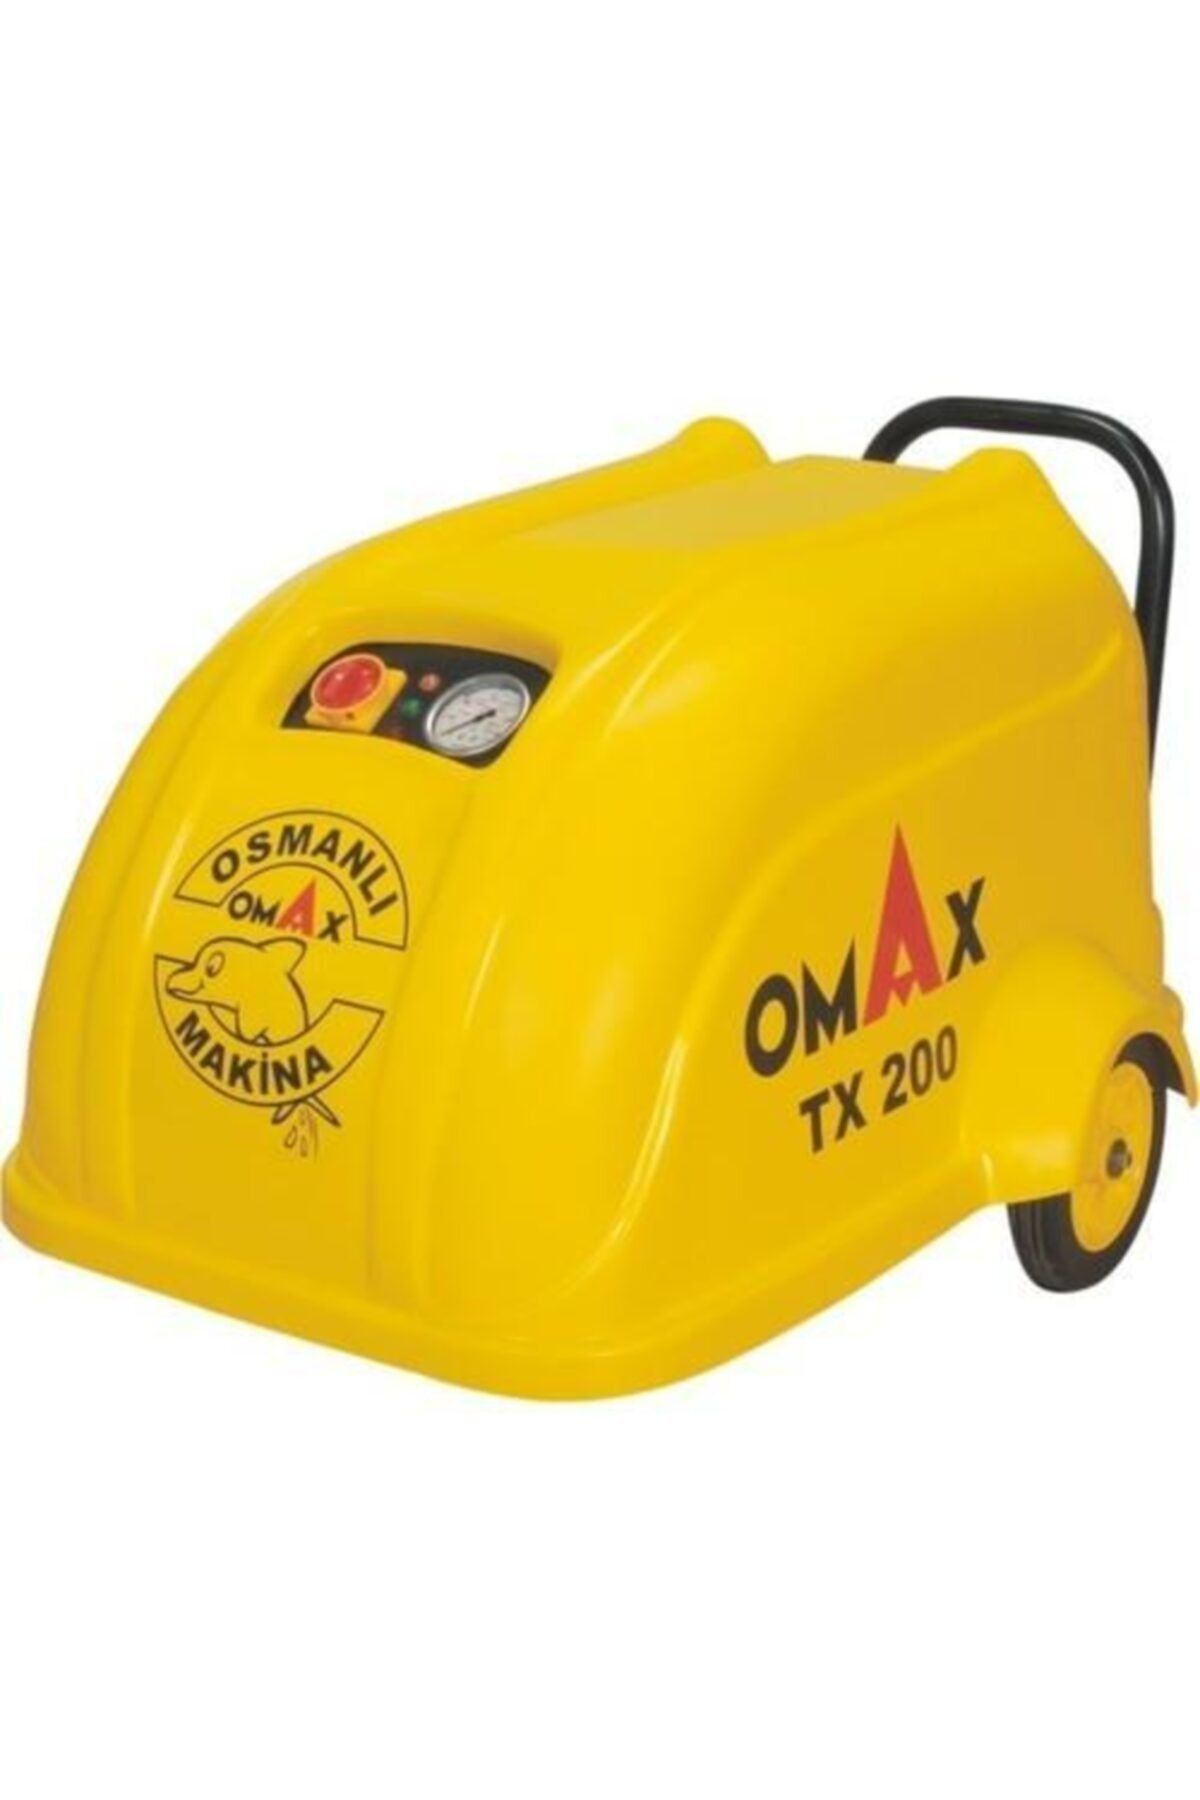 Omax Tx200 Yüksek Basınçlı Soğuk Oto Yıkama Makinası 200 Bar